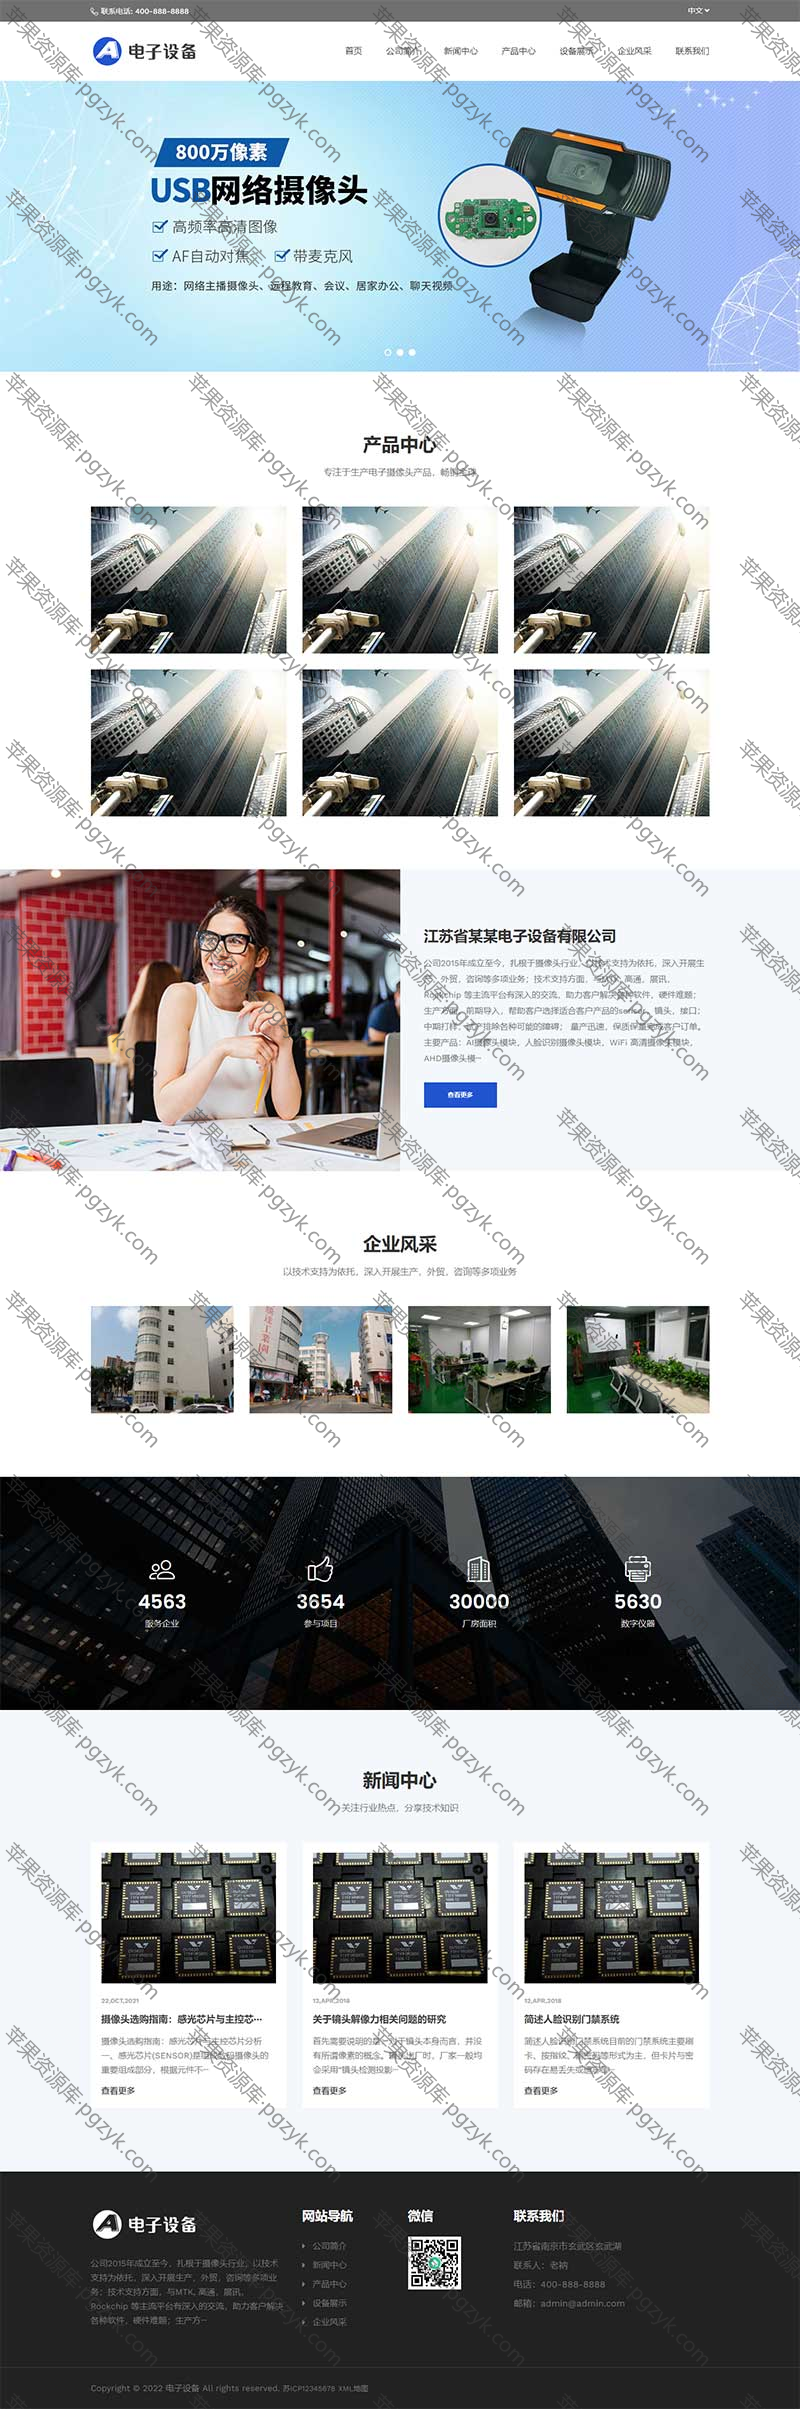 中英文双语网络摄像头探头设备pbootcms网站模板-米酷主题